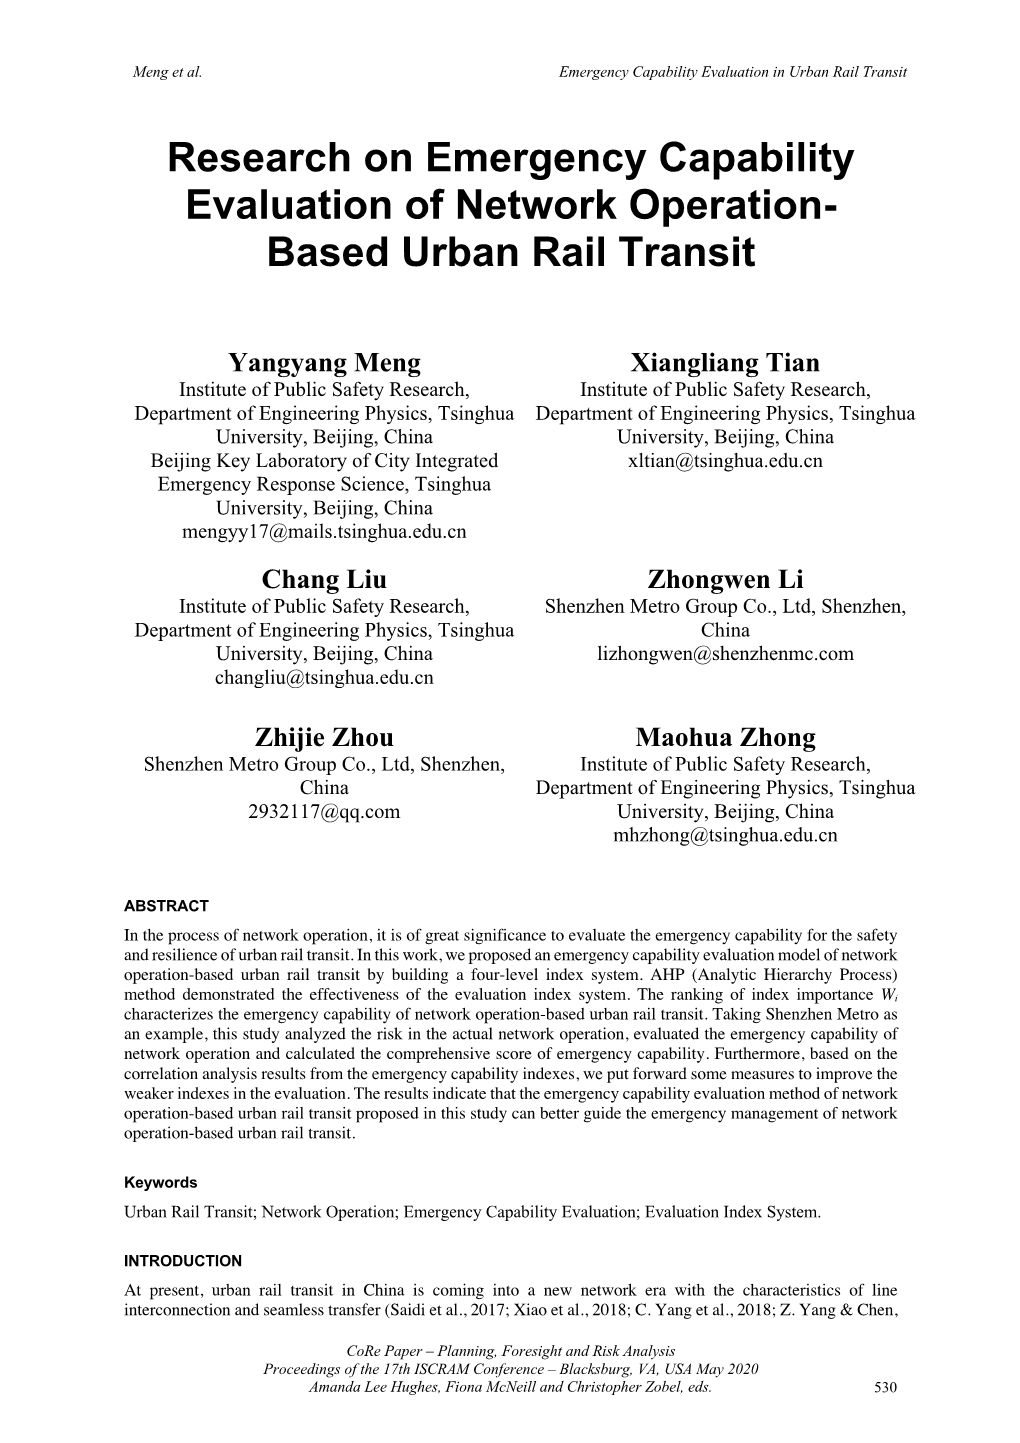 Based Urban Rail Transit